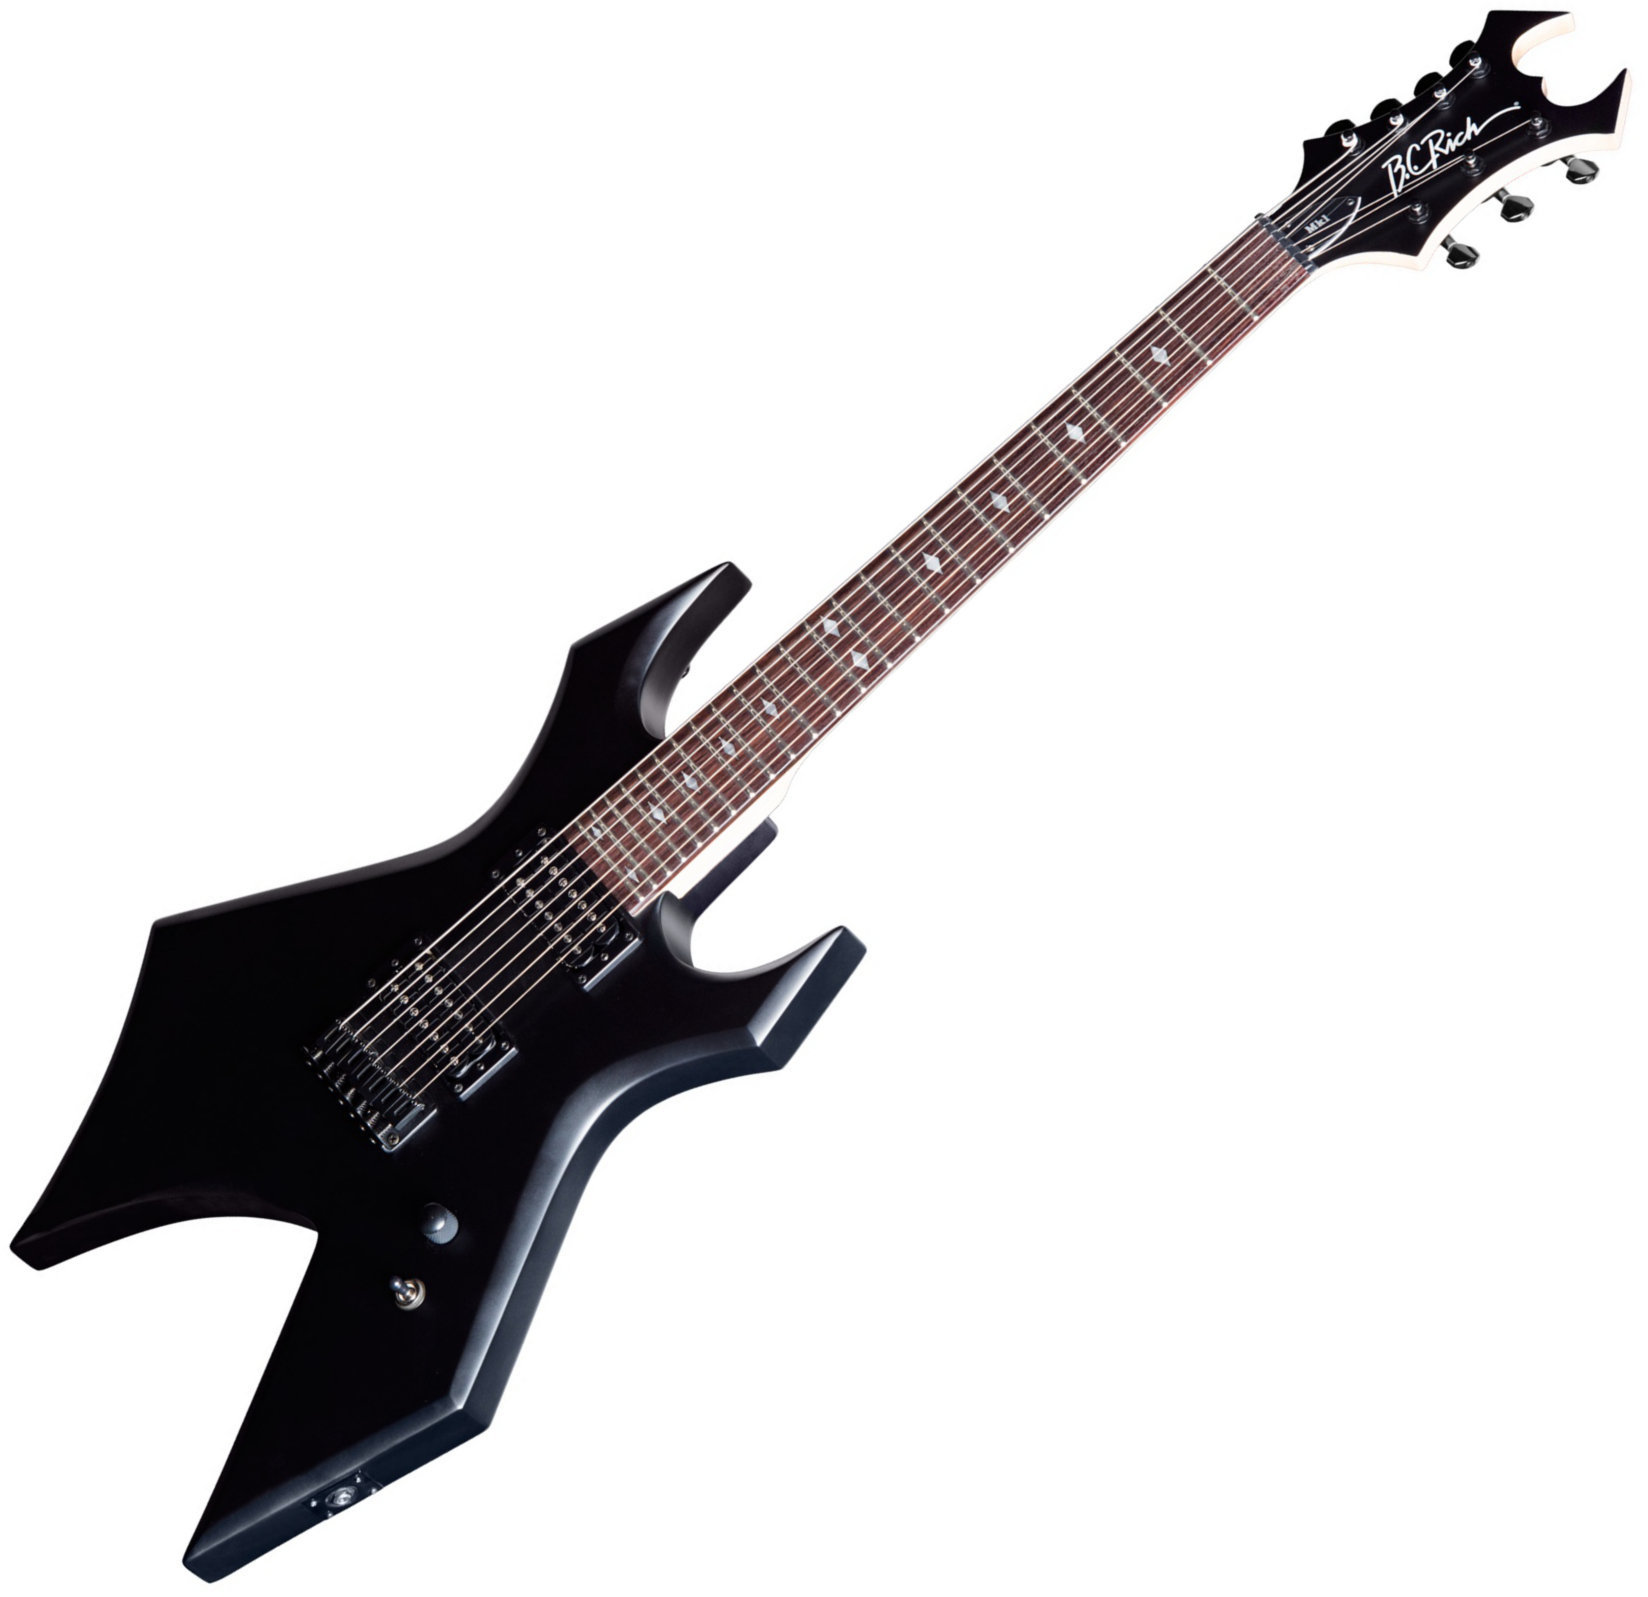 7-string Electric Guitar BC RICH MK1 Warlock 7 Shadow Black